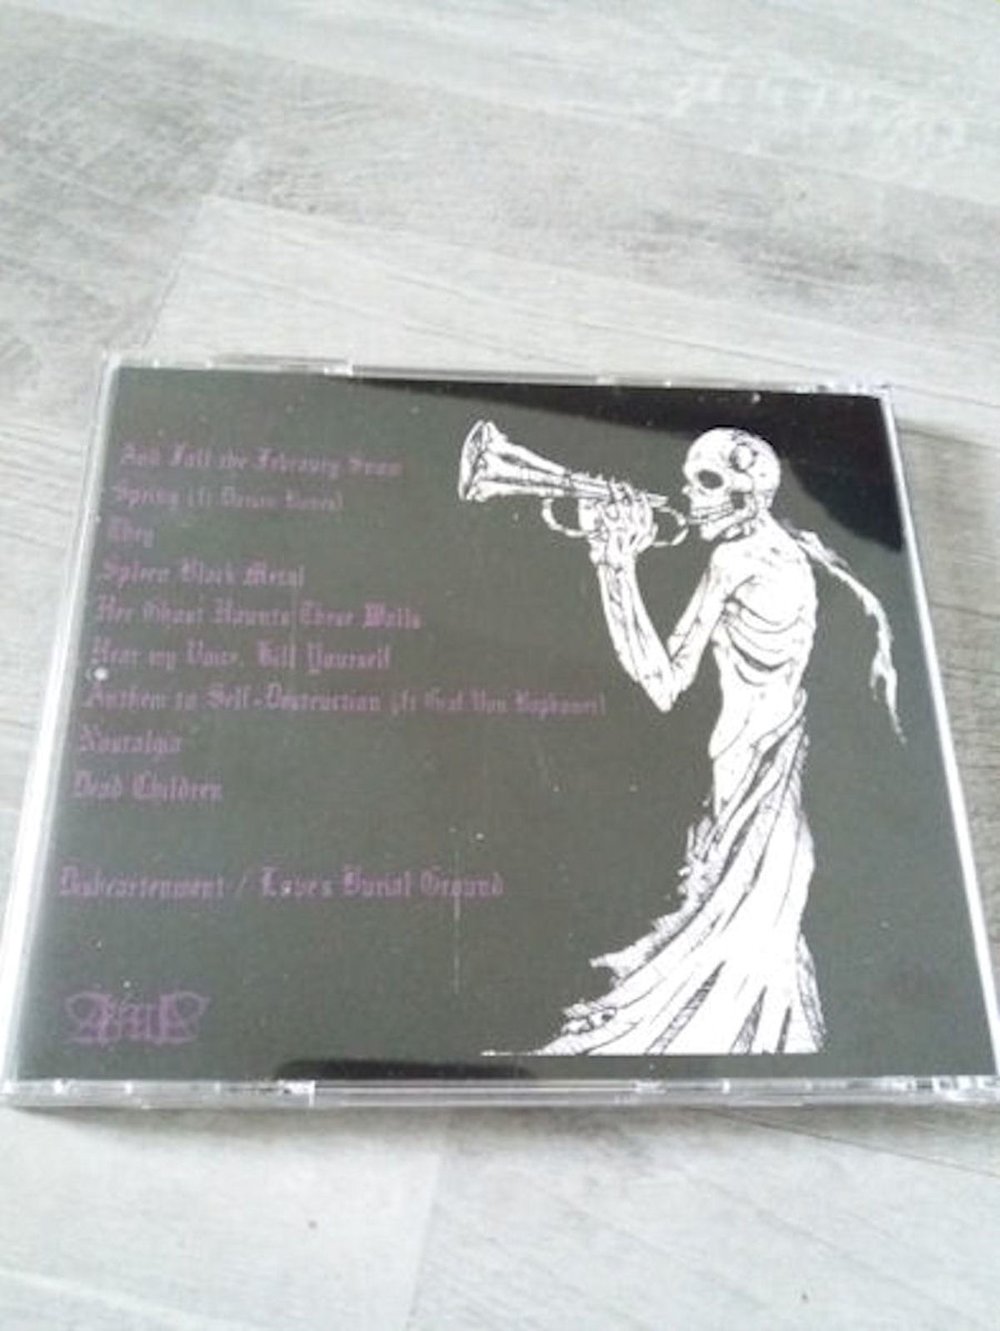 Deathcade - CD